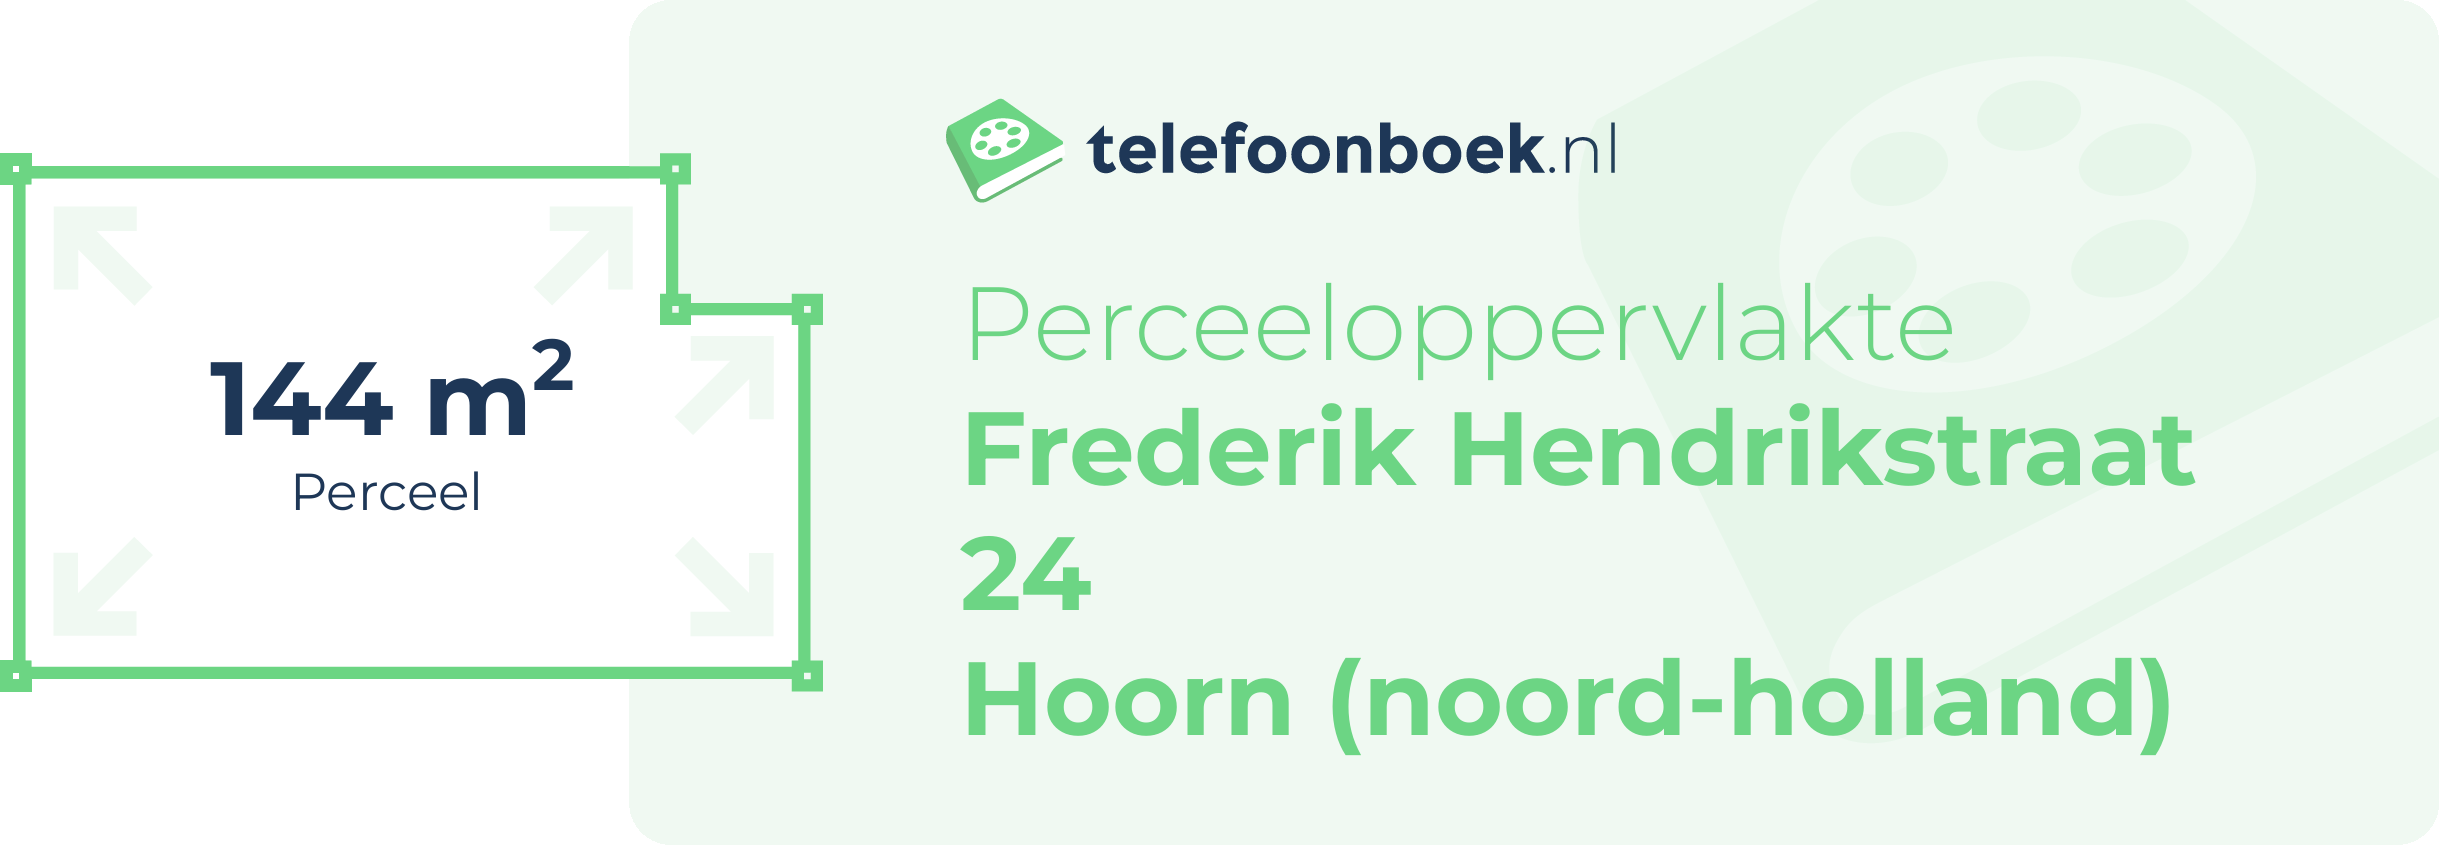 Perceeloppervlakte Frederik Hendrikstraat 24 Hoorn (Noord-Holland)